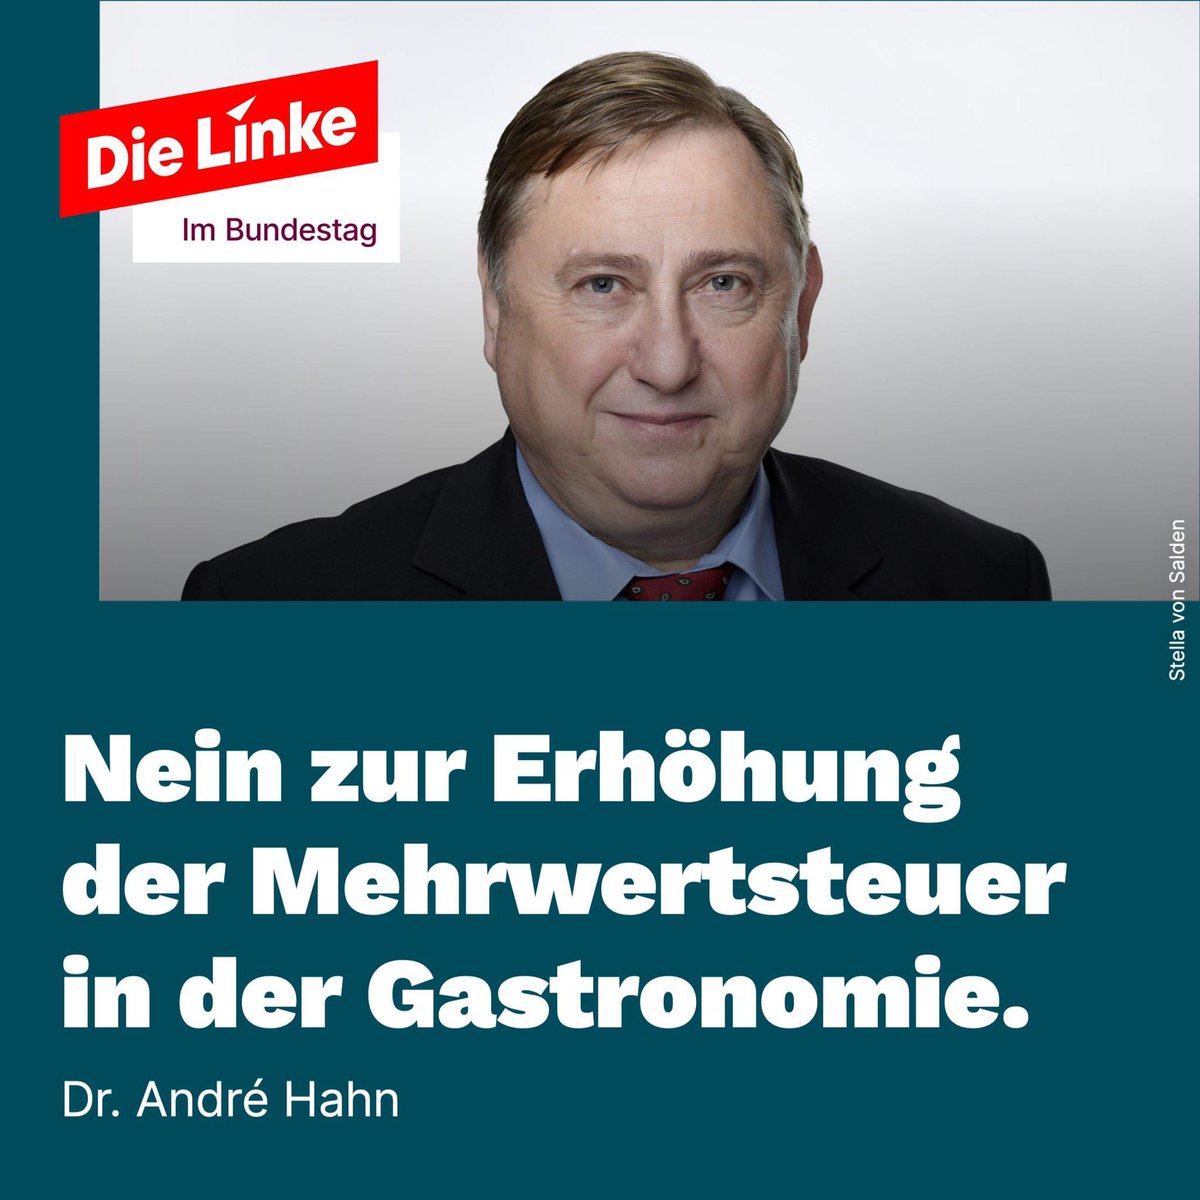 Dr. André Hahn aus der Tourismusregion #SächsischeSchweiz kritisiert den Wegfall der ermäßigten MwSt zum Jahresende. Immer wieder haben wir für eine ermäßigte MwSt von 7% in Hotellerie und Gastronomie plädiert - ebenso für Schul- und Krankenhausessen, so auch aktuell im Bundestag